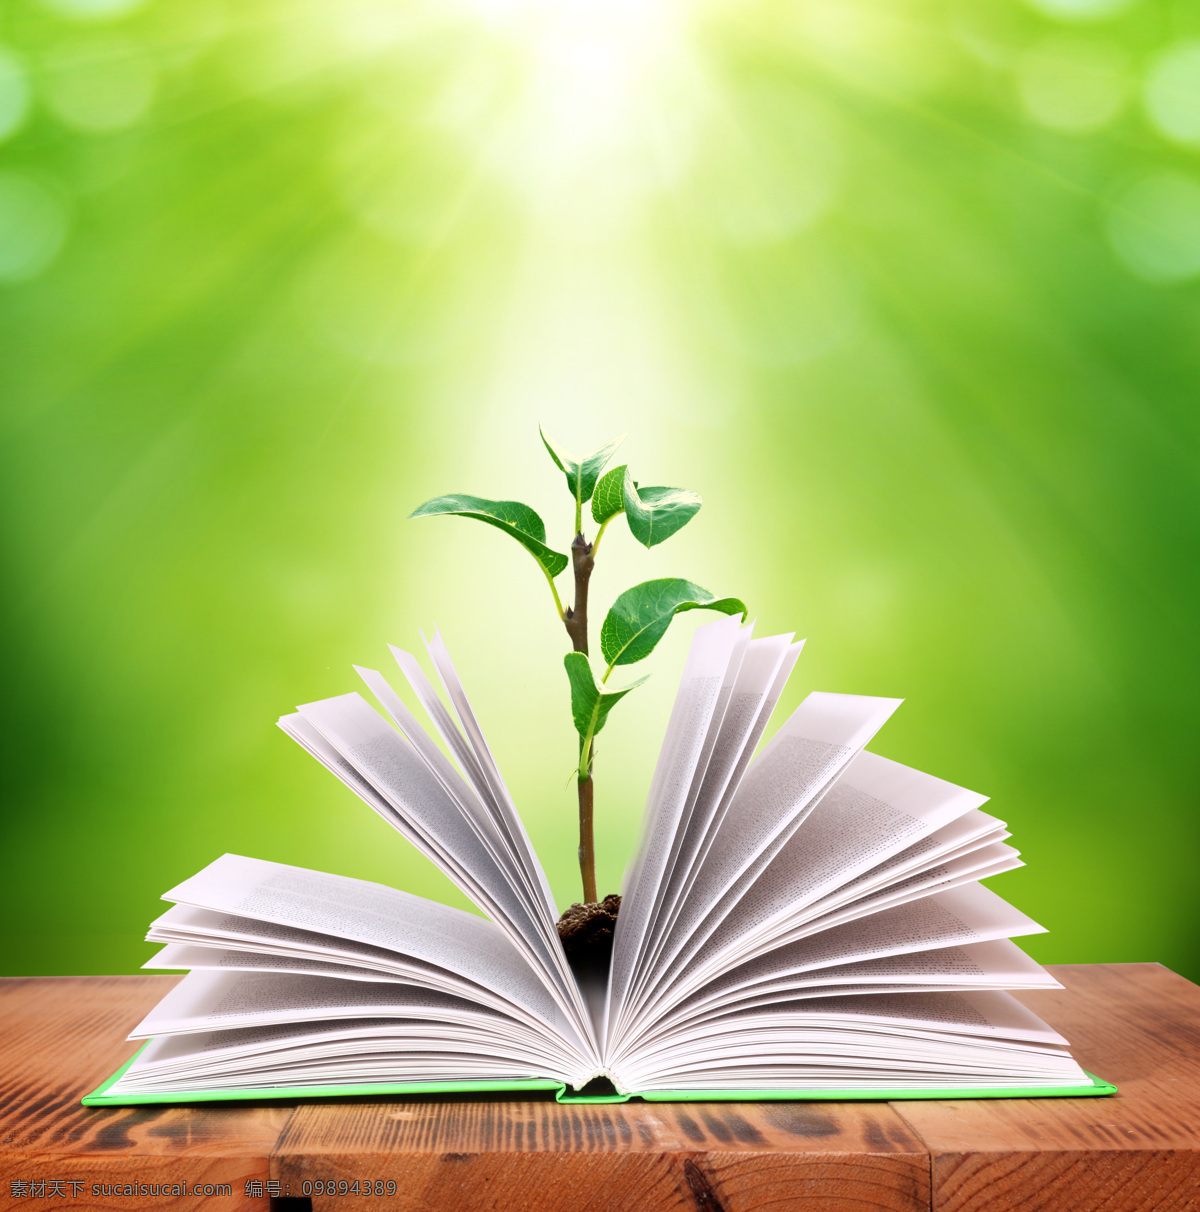 阳光 下 书本 中 小 树苗 书籍 树木 植树 环保 生态 其他类别 环境家居